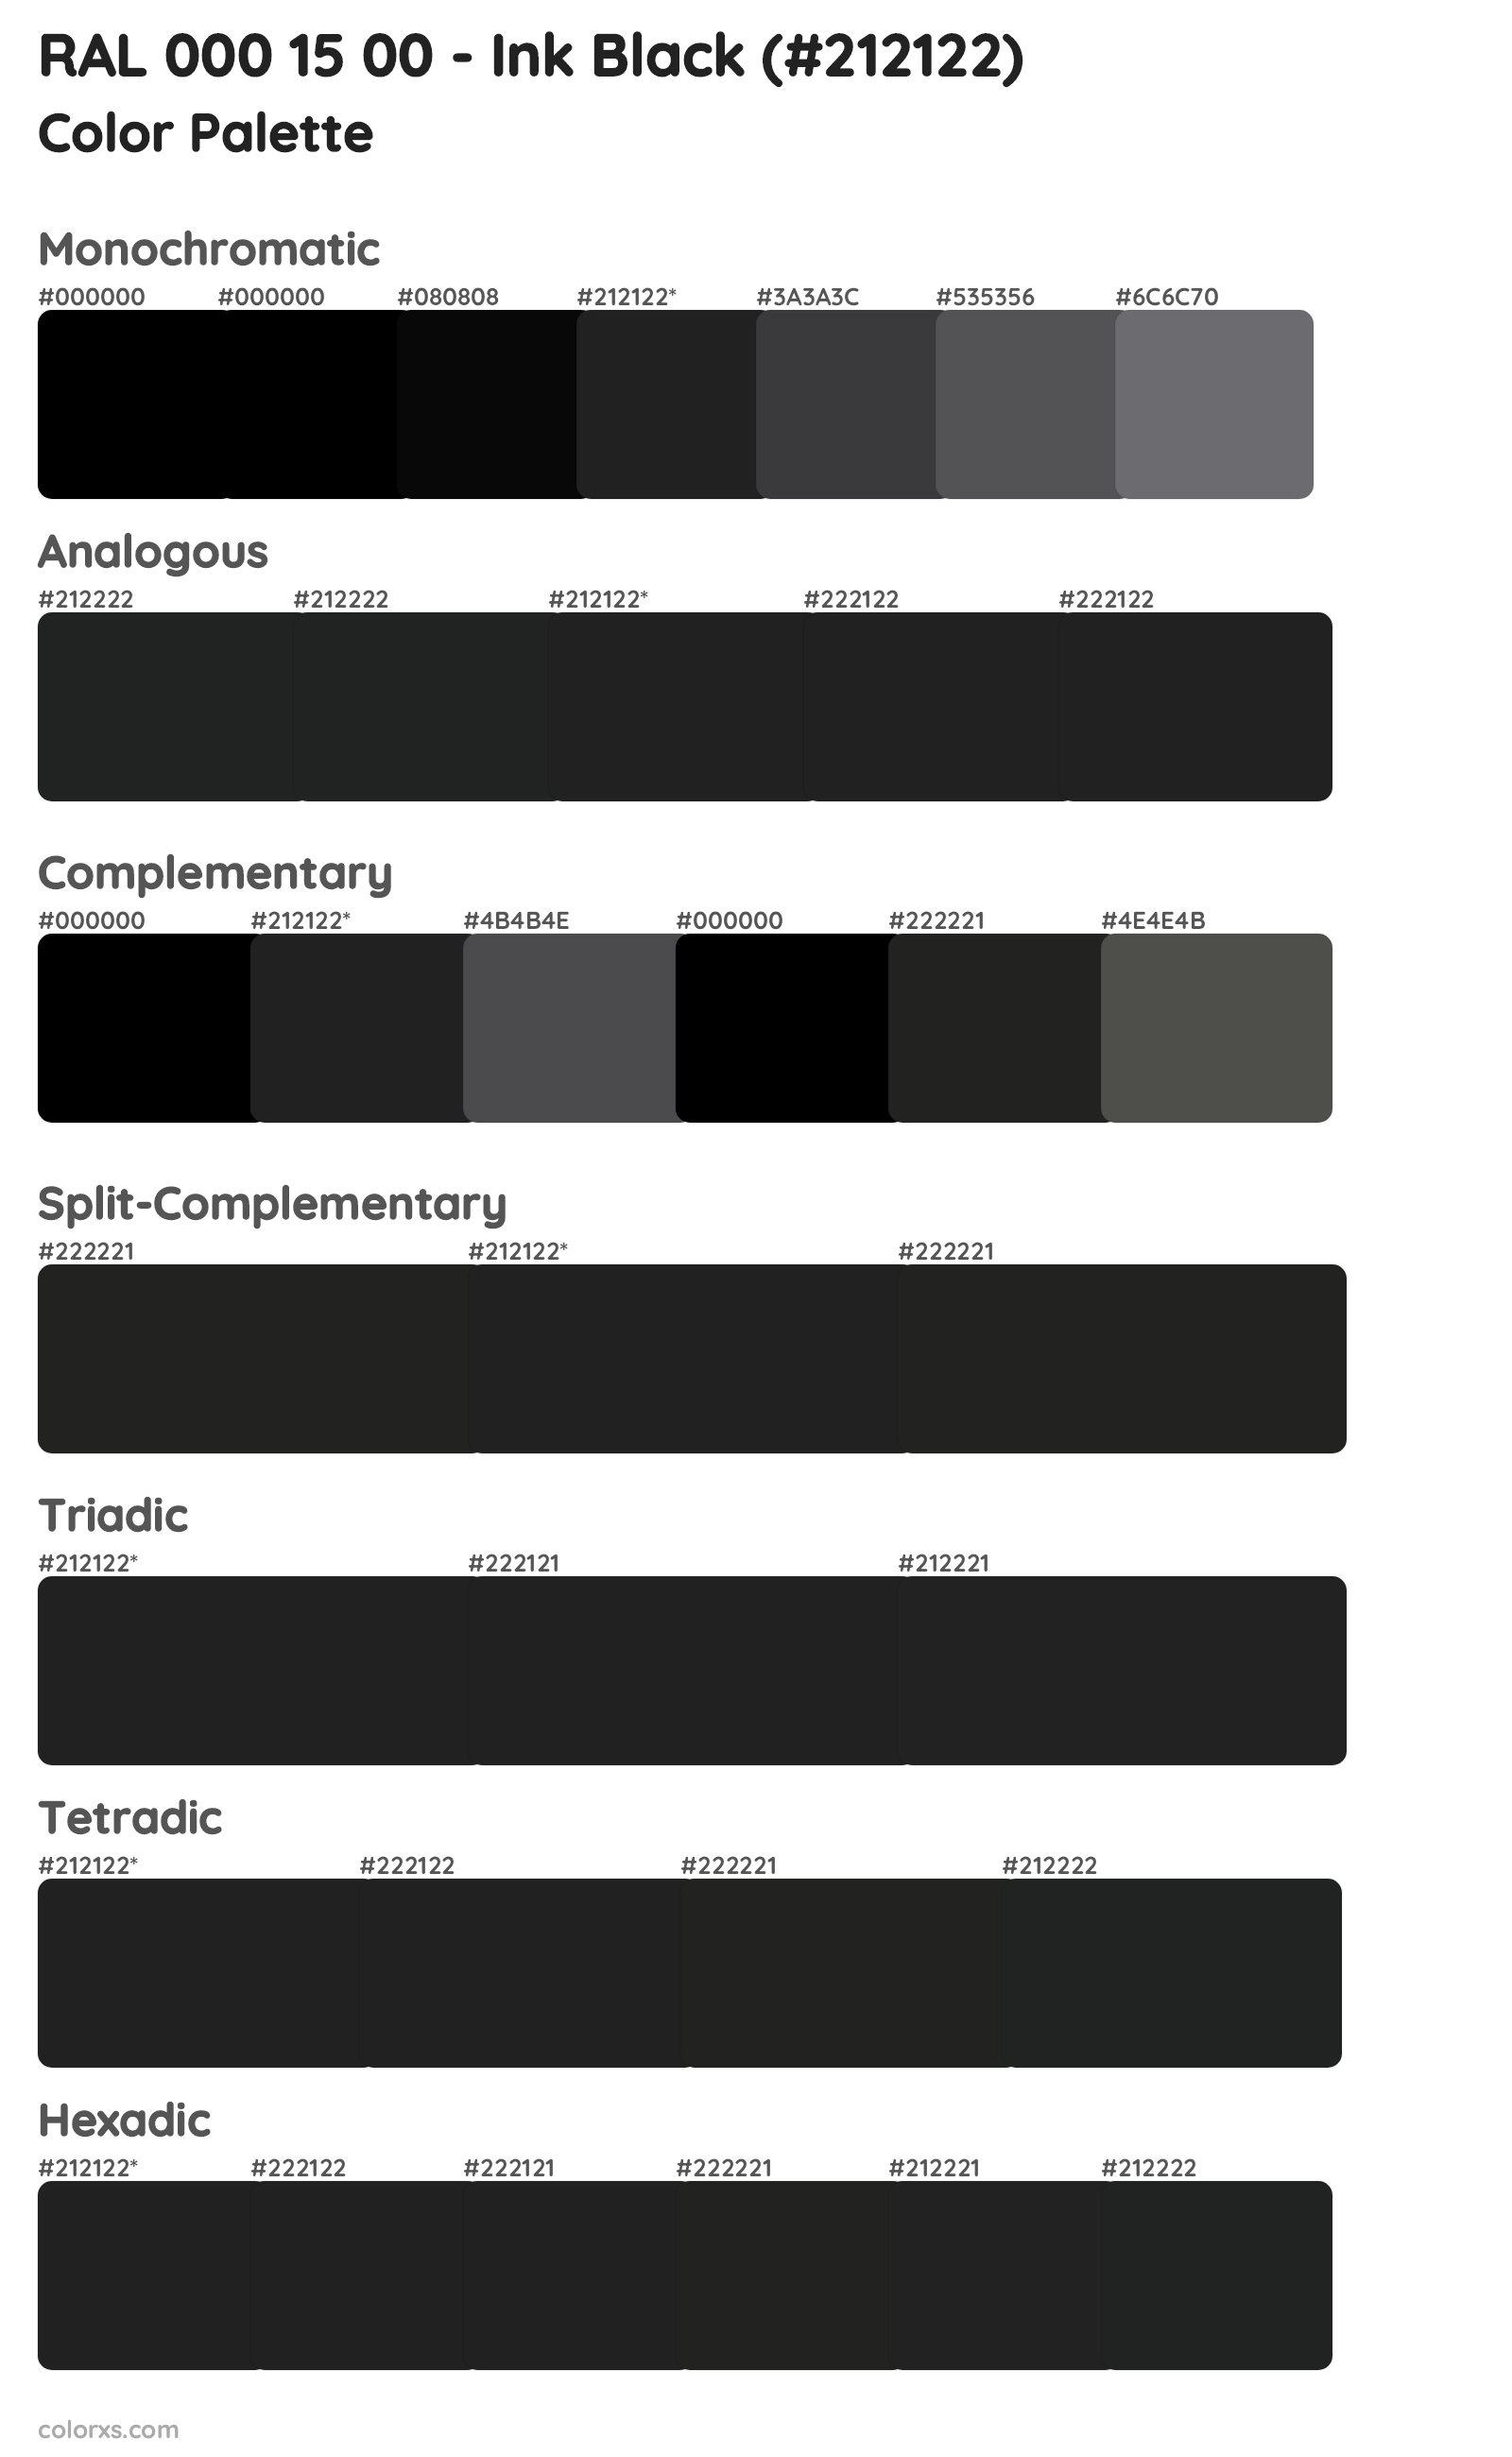 RAL 000 15 00 - Ink Black Color Scheme Palettes